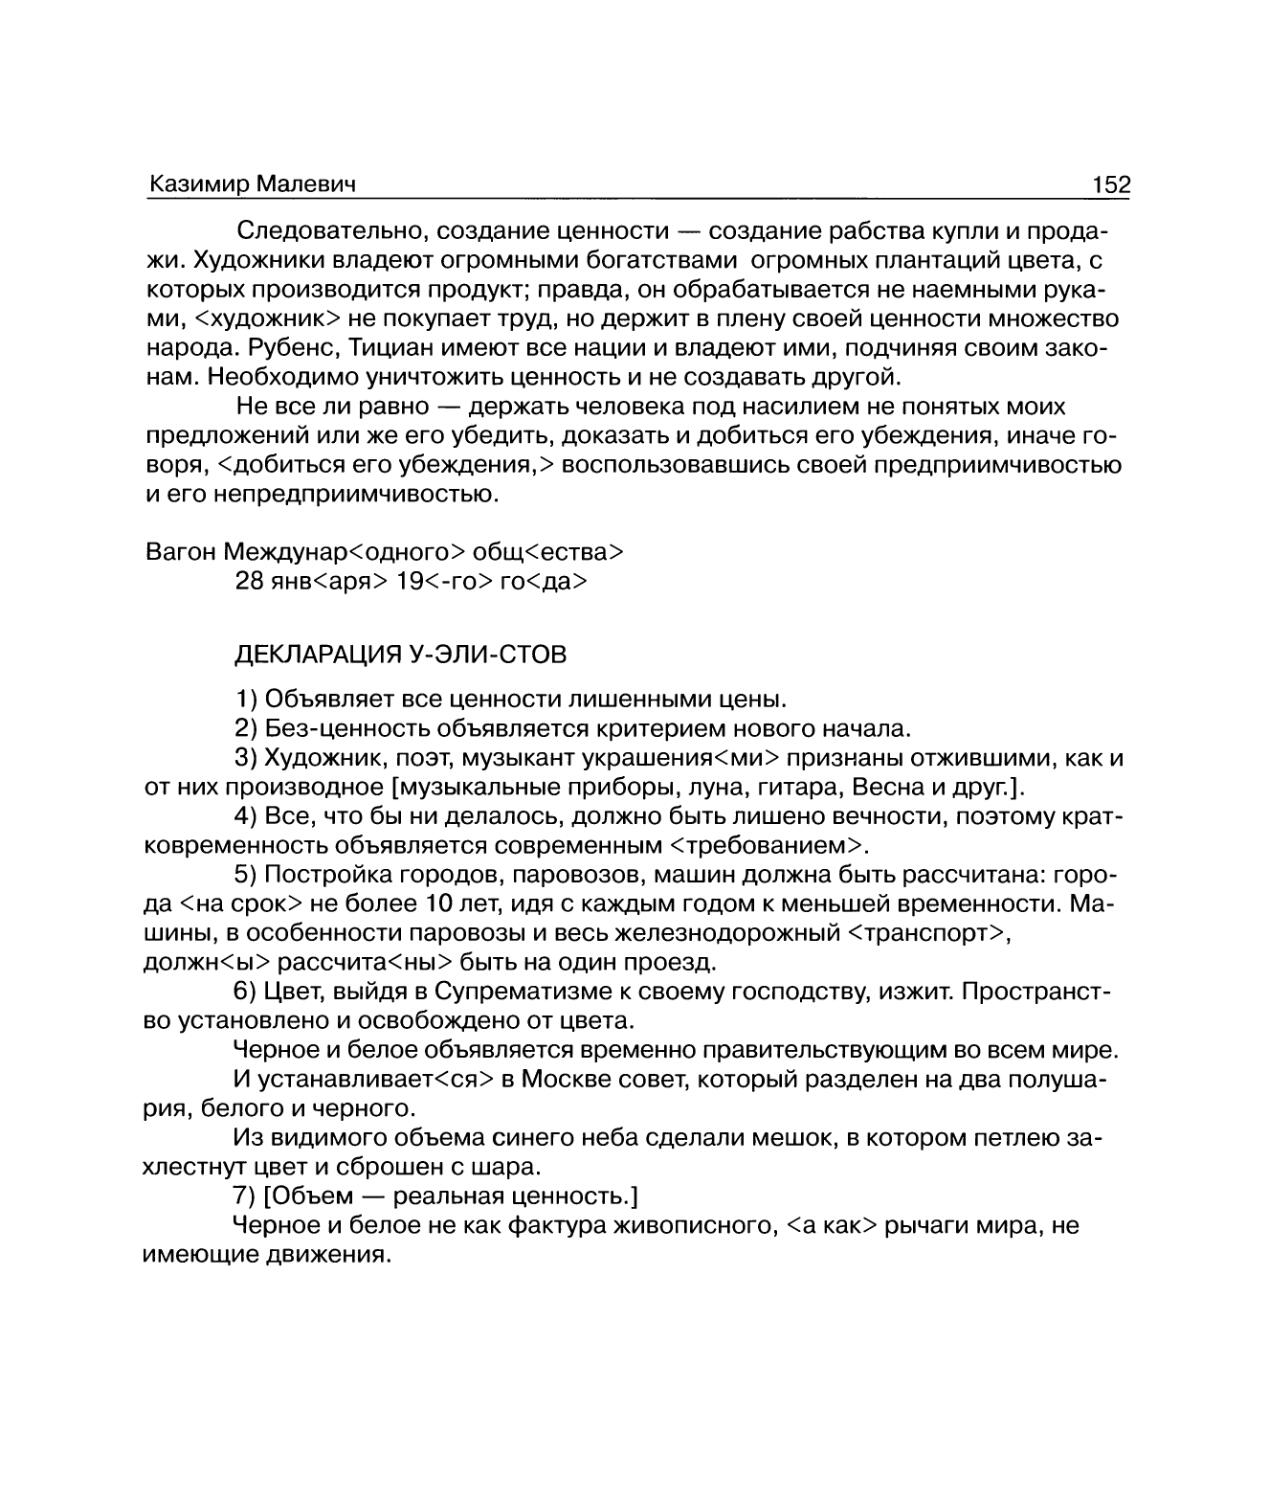 Декларация У-эли-стов